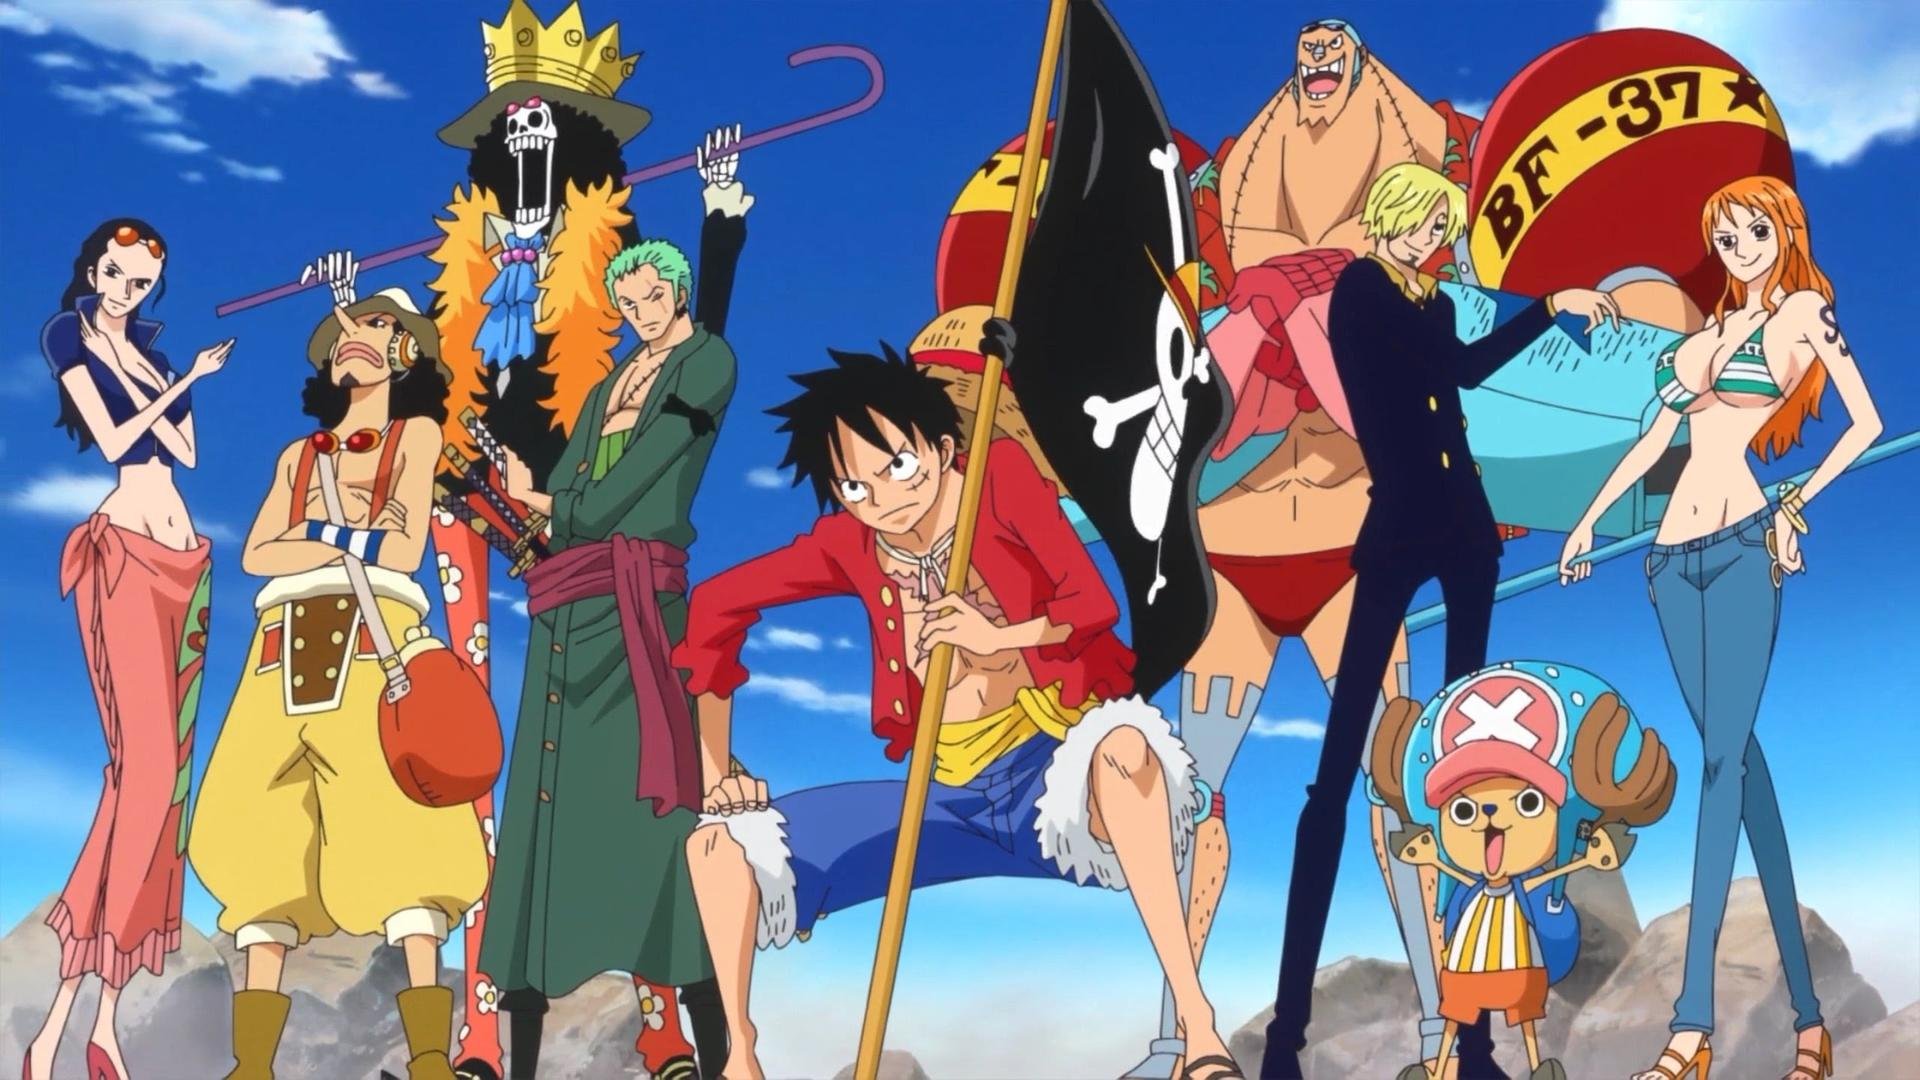 O Que vocês acharam do Live action de One Piece? : filmeseseries